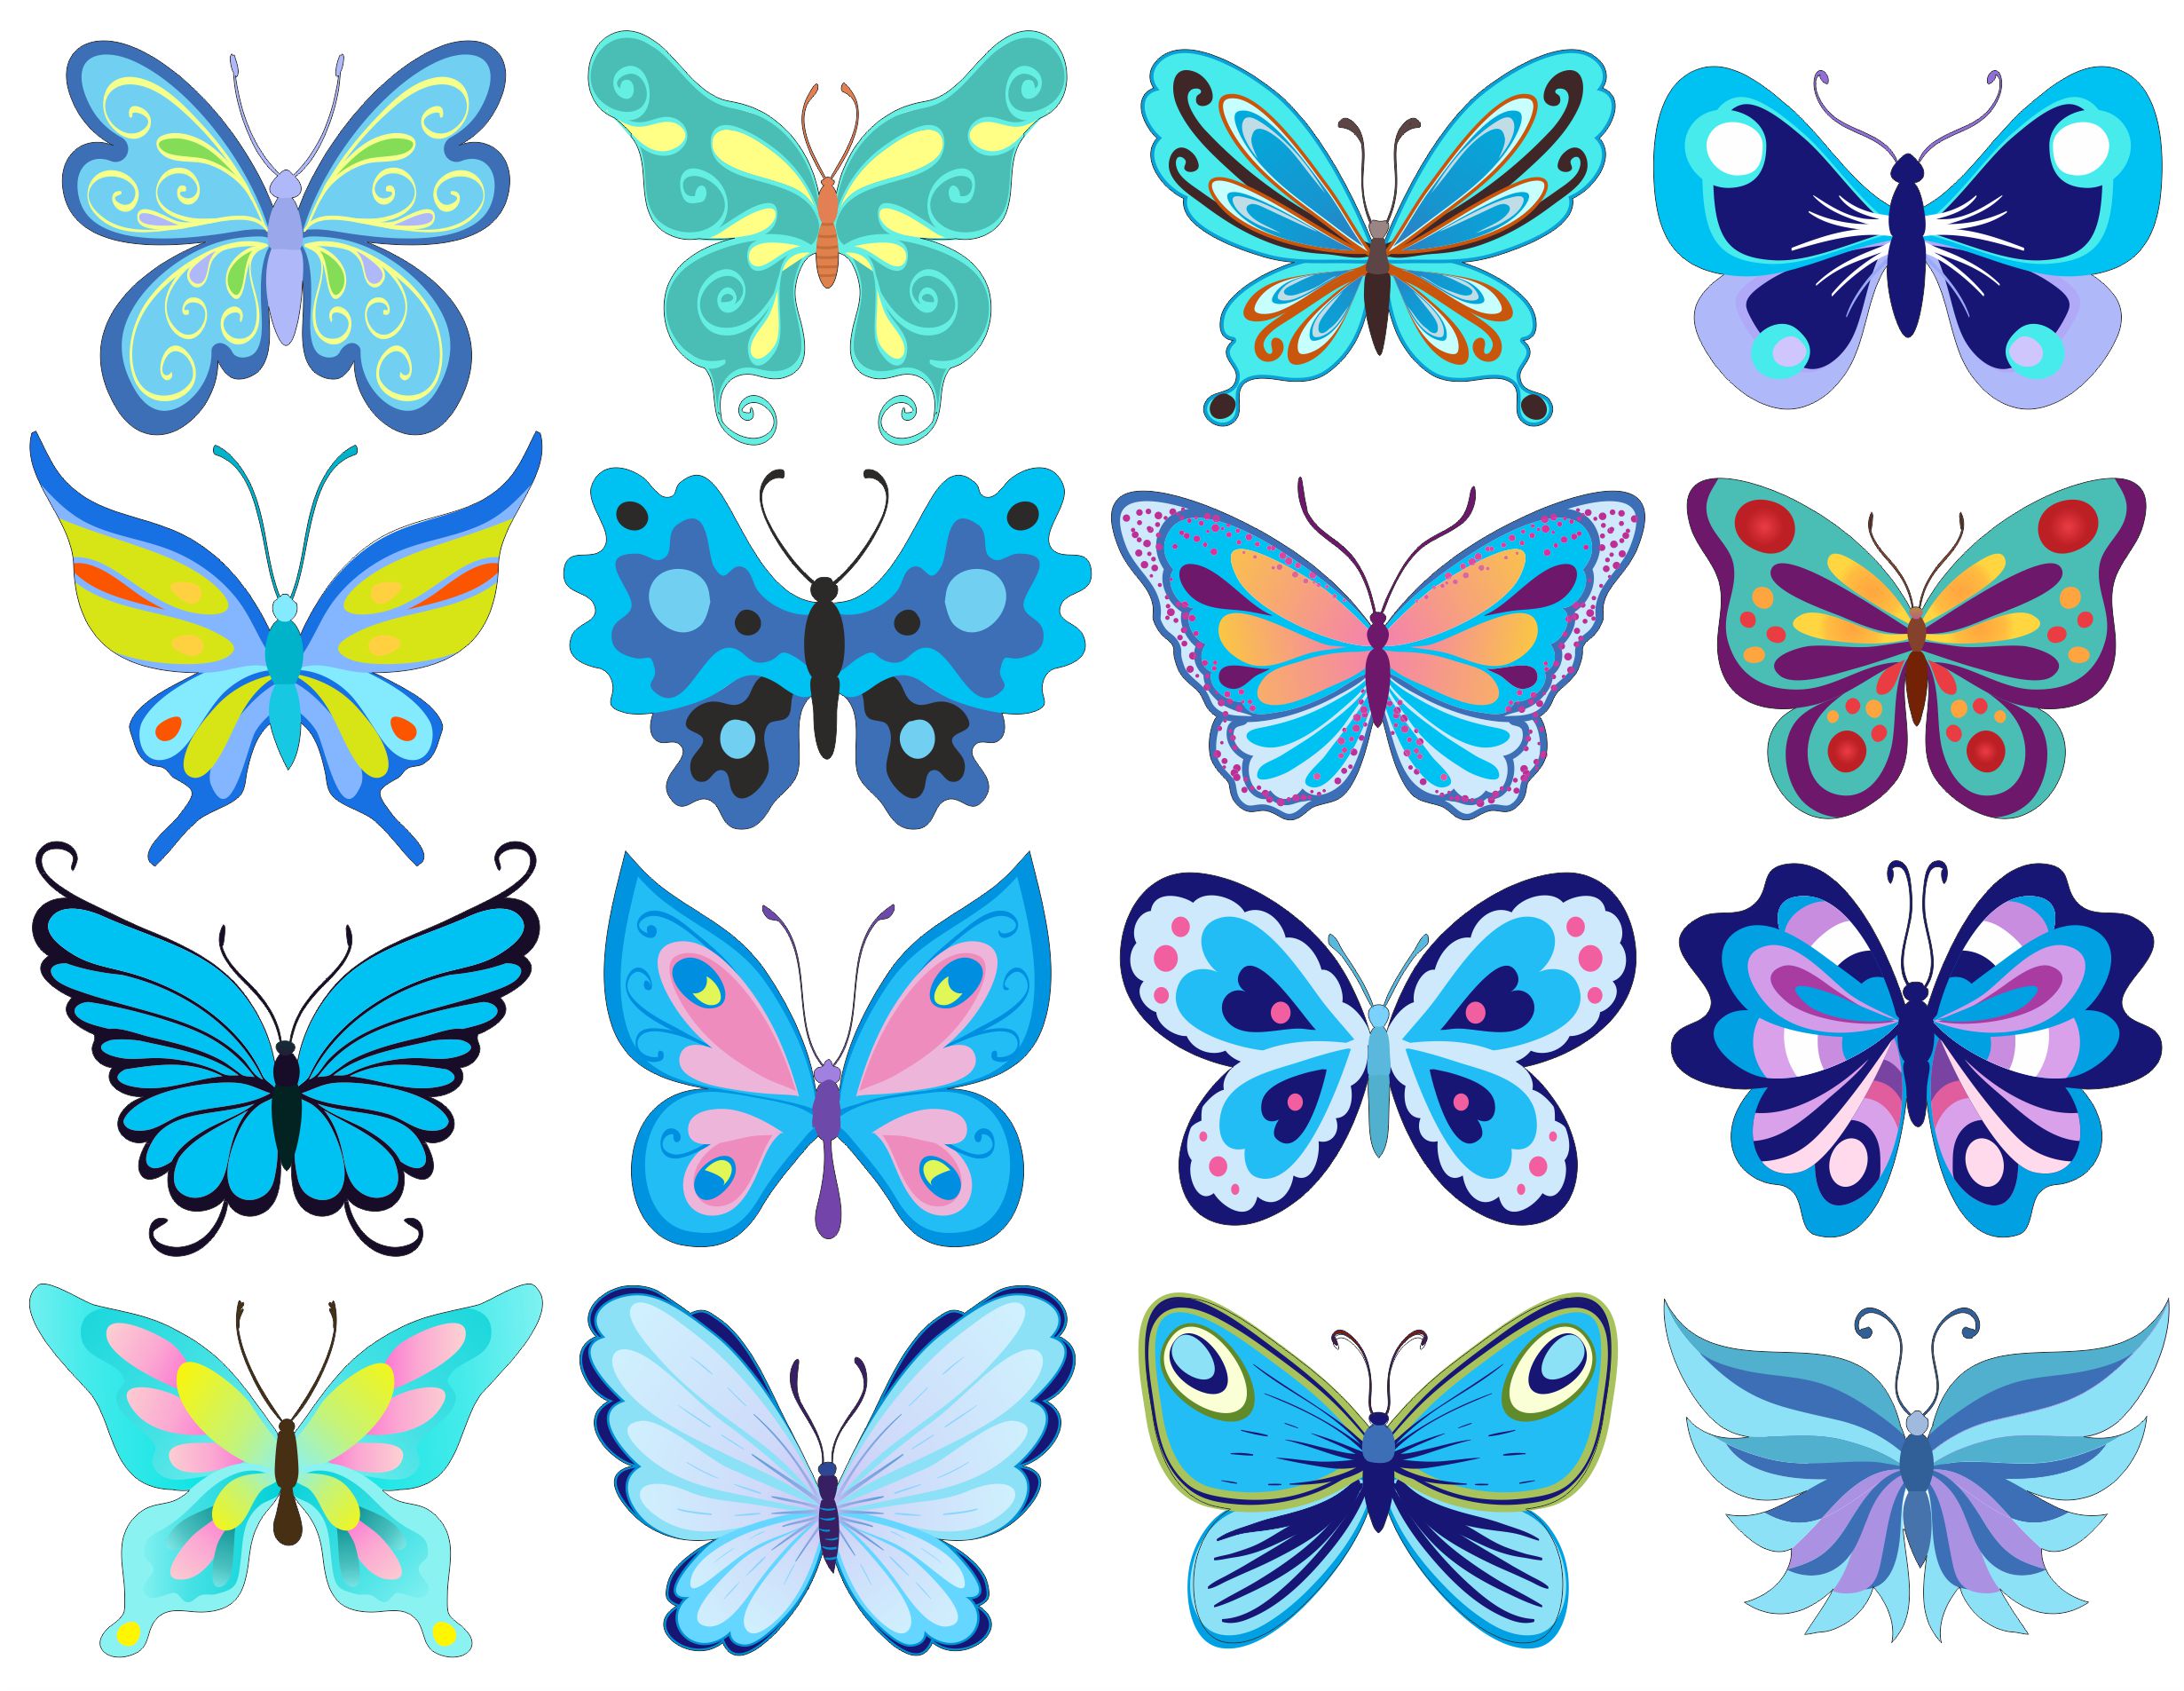 Шаблон бабочек для печати. Бабочки картинки для печати цветные. Бабочки для вырезания цветные. Наклейки для распечатки бабочки. Бабочки трафареты для вырезания цветные.